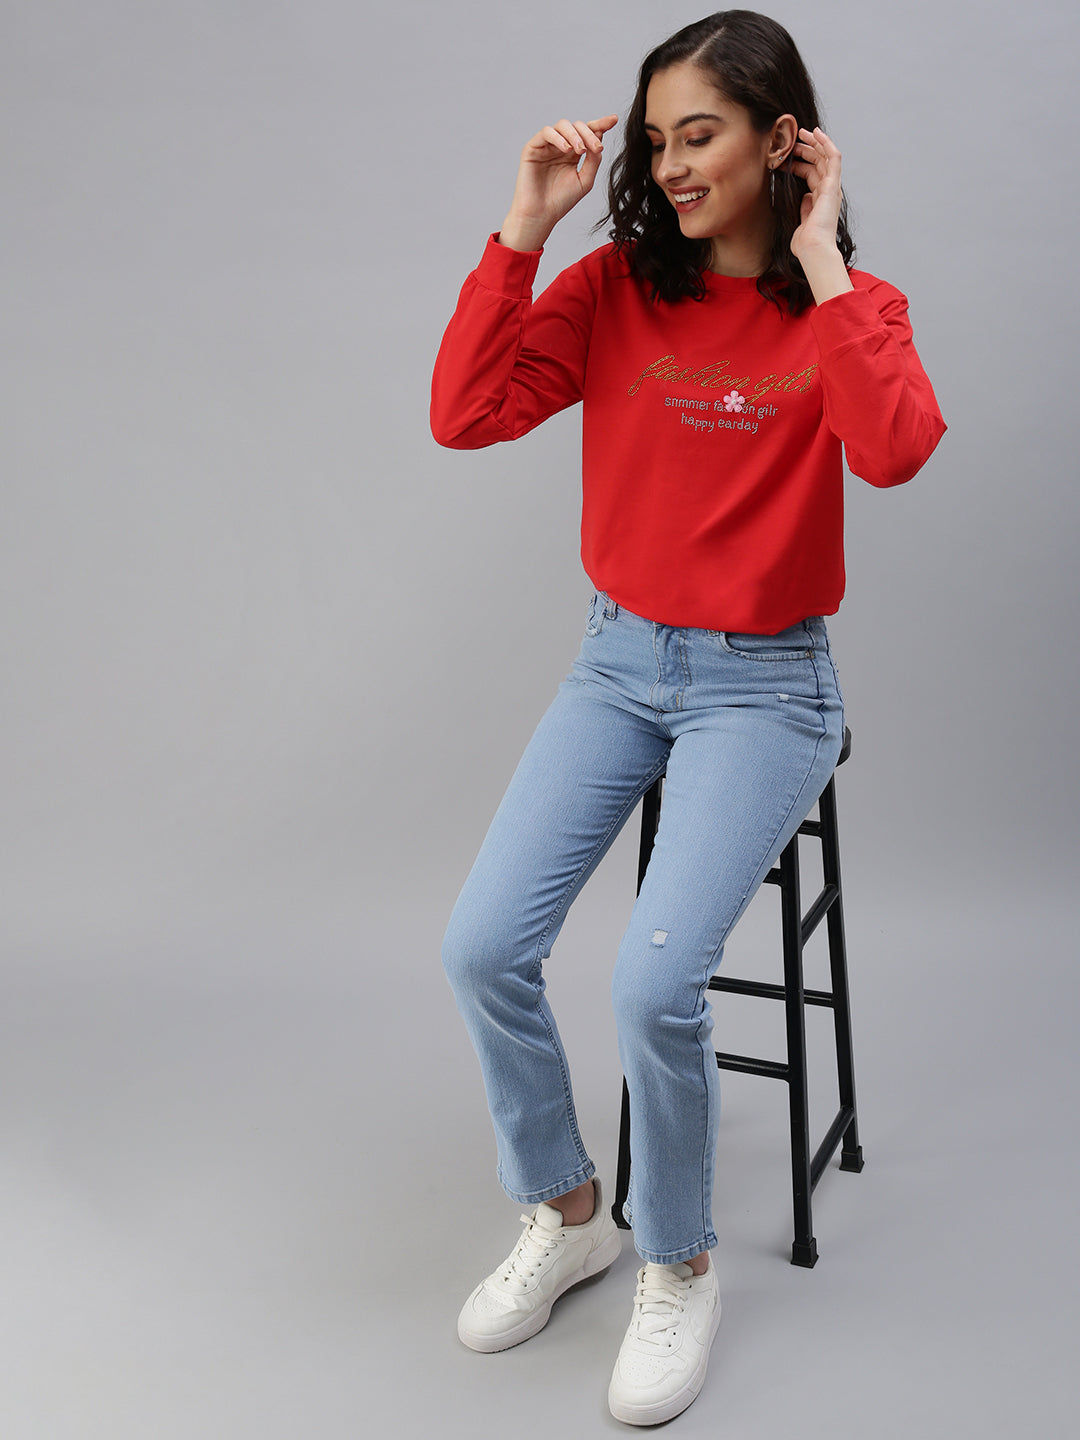 Women's Red Solid SweatShirt